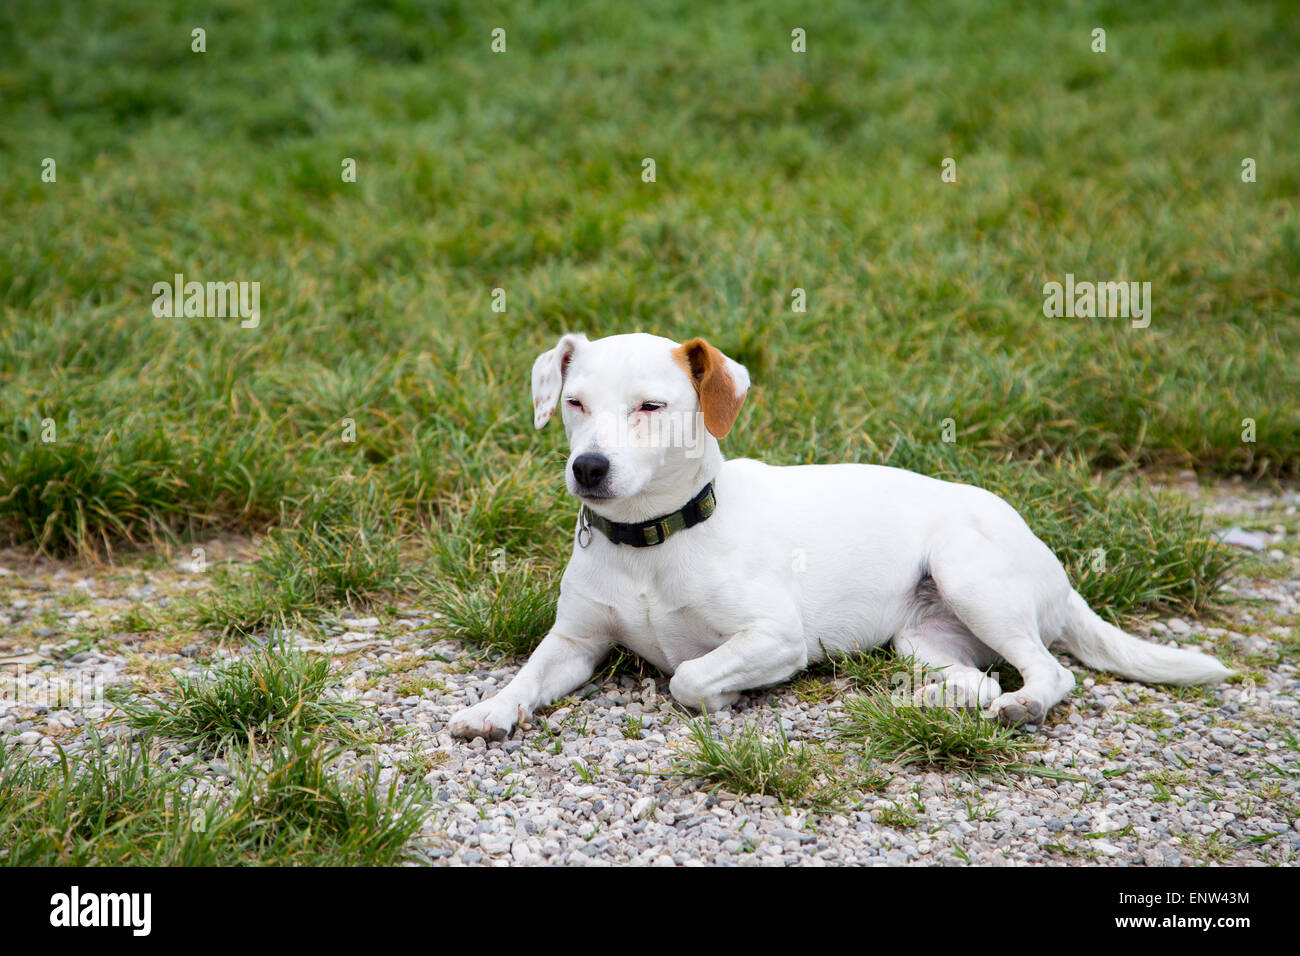 Piccolo Cane posa su erba sguardo innocente e guardando al lato. Simpatico Labrador misto bianco colore crema Foto Stock